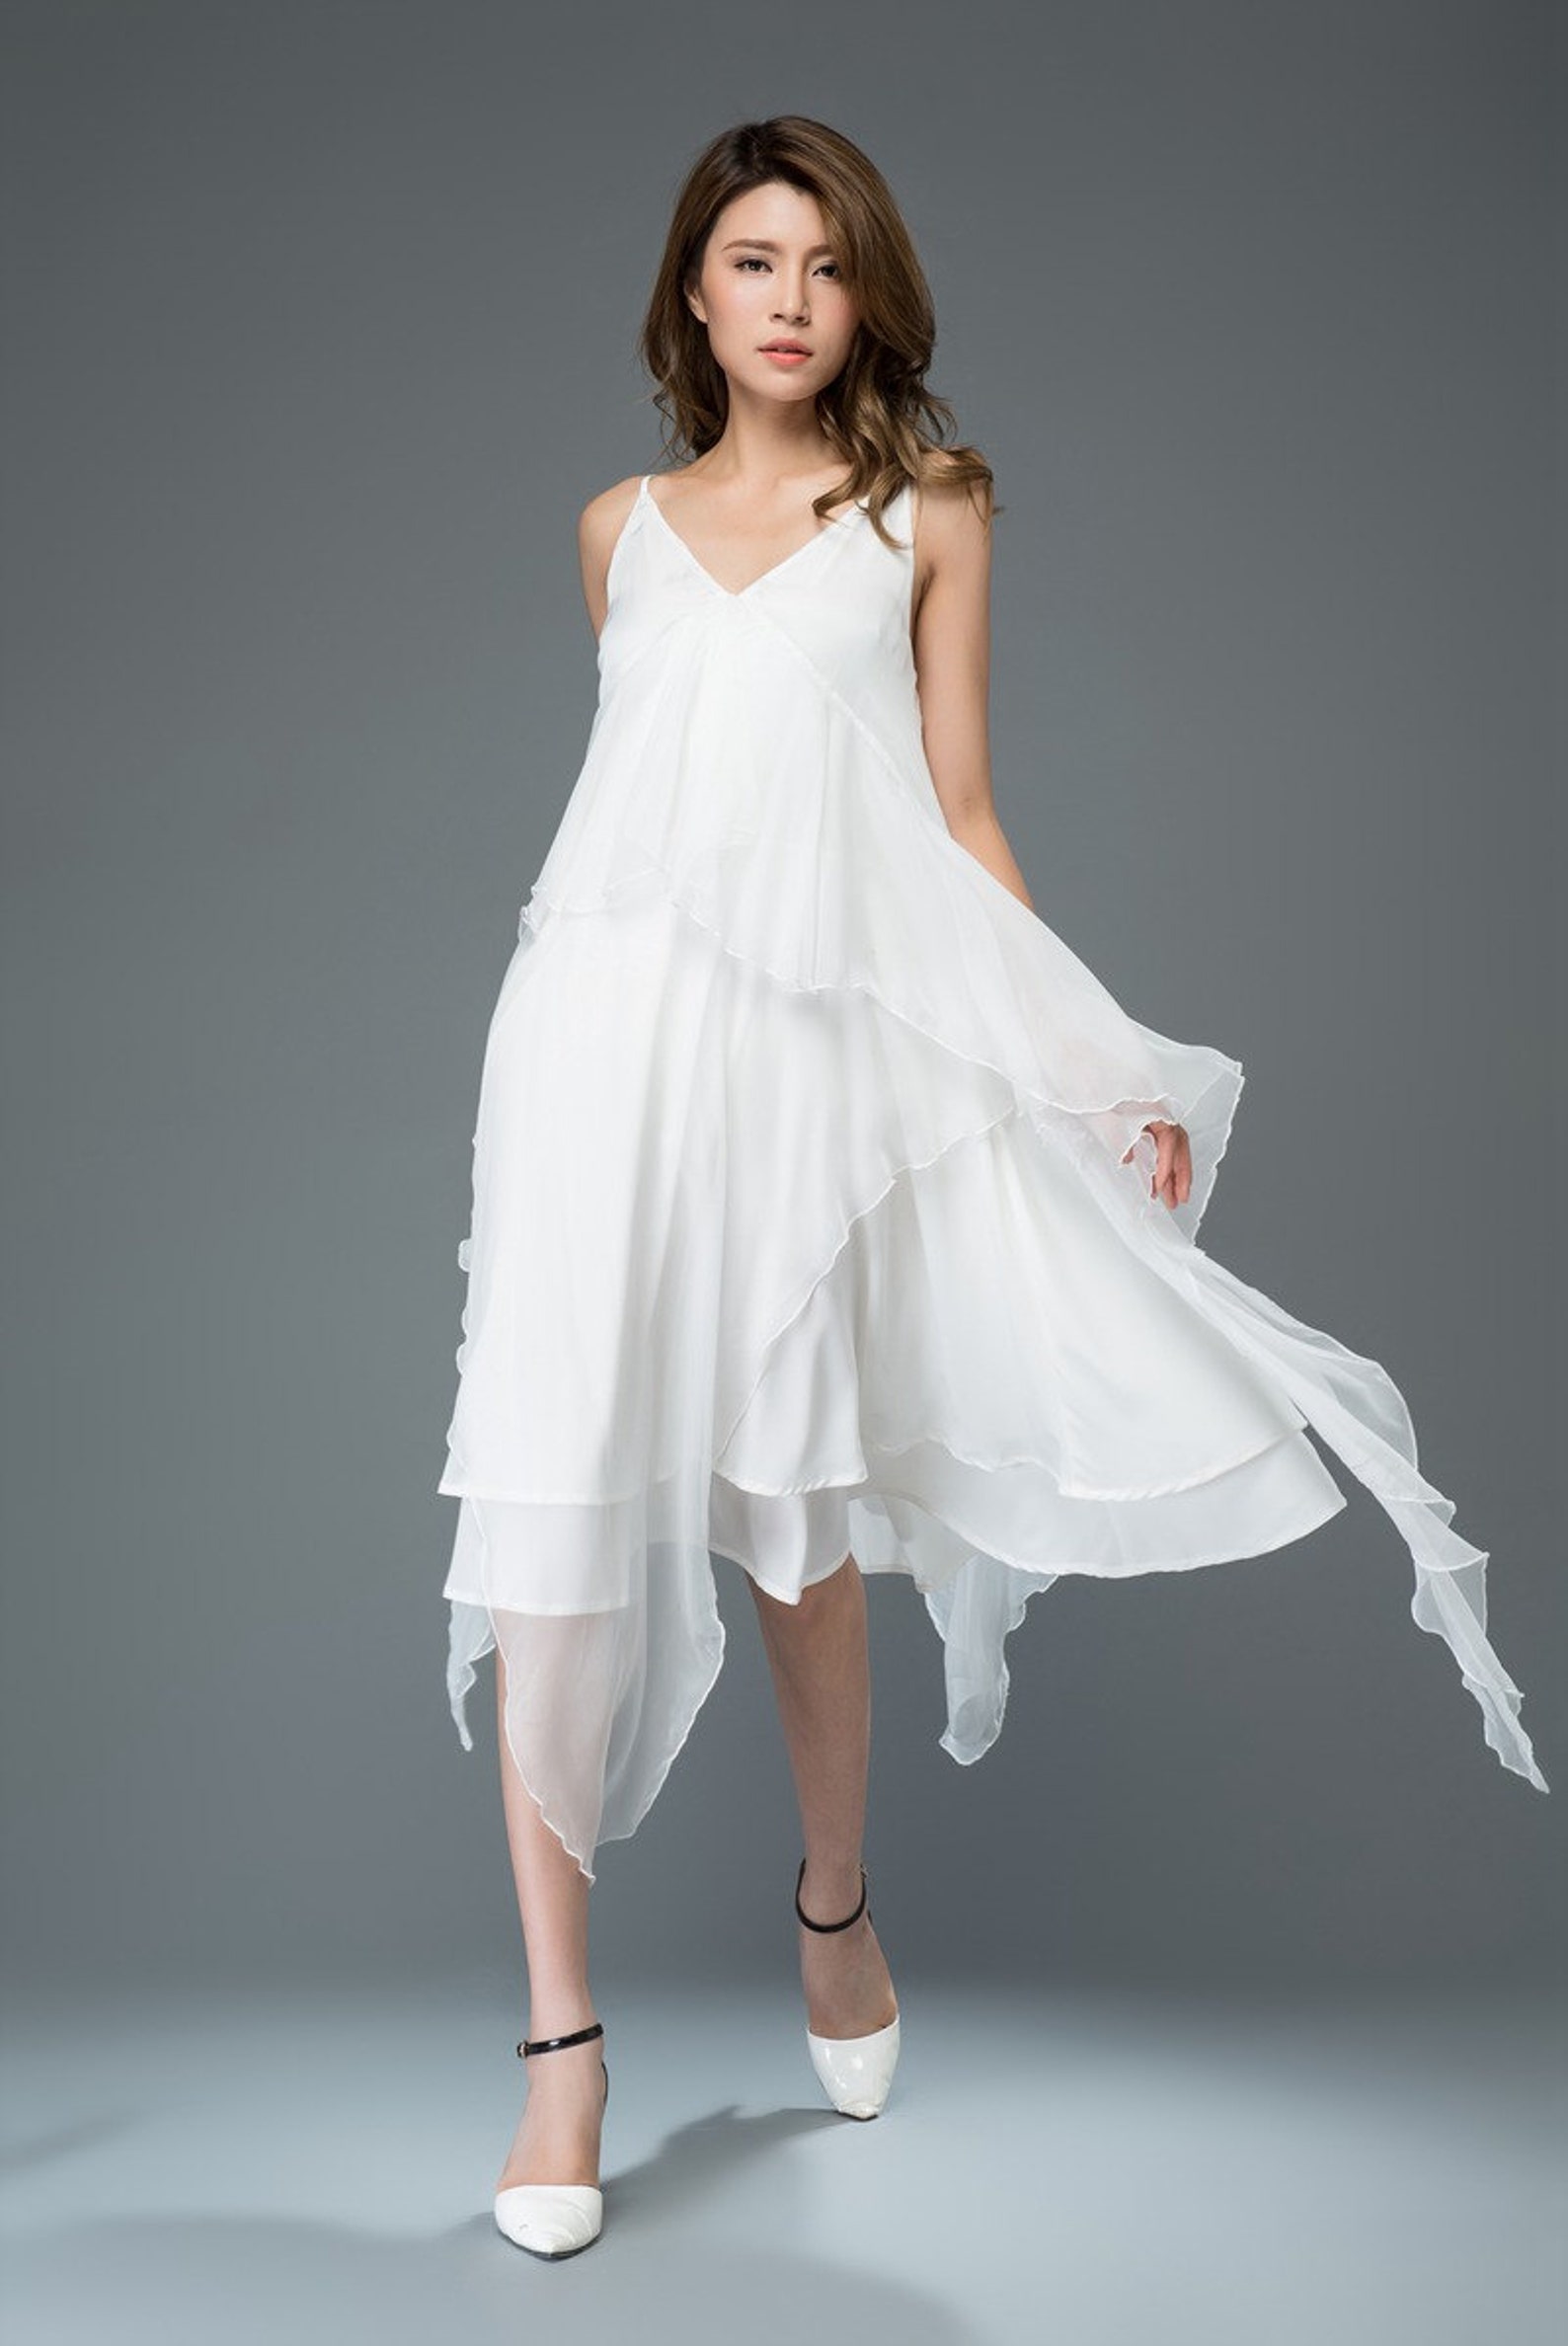 White Chiffon Dress Prom Dress Flare Dress Sexy Dress Etsy